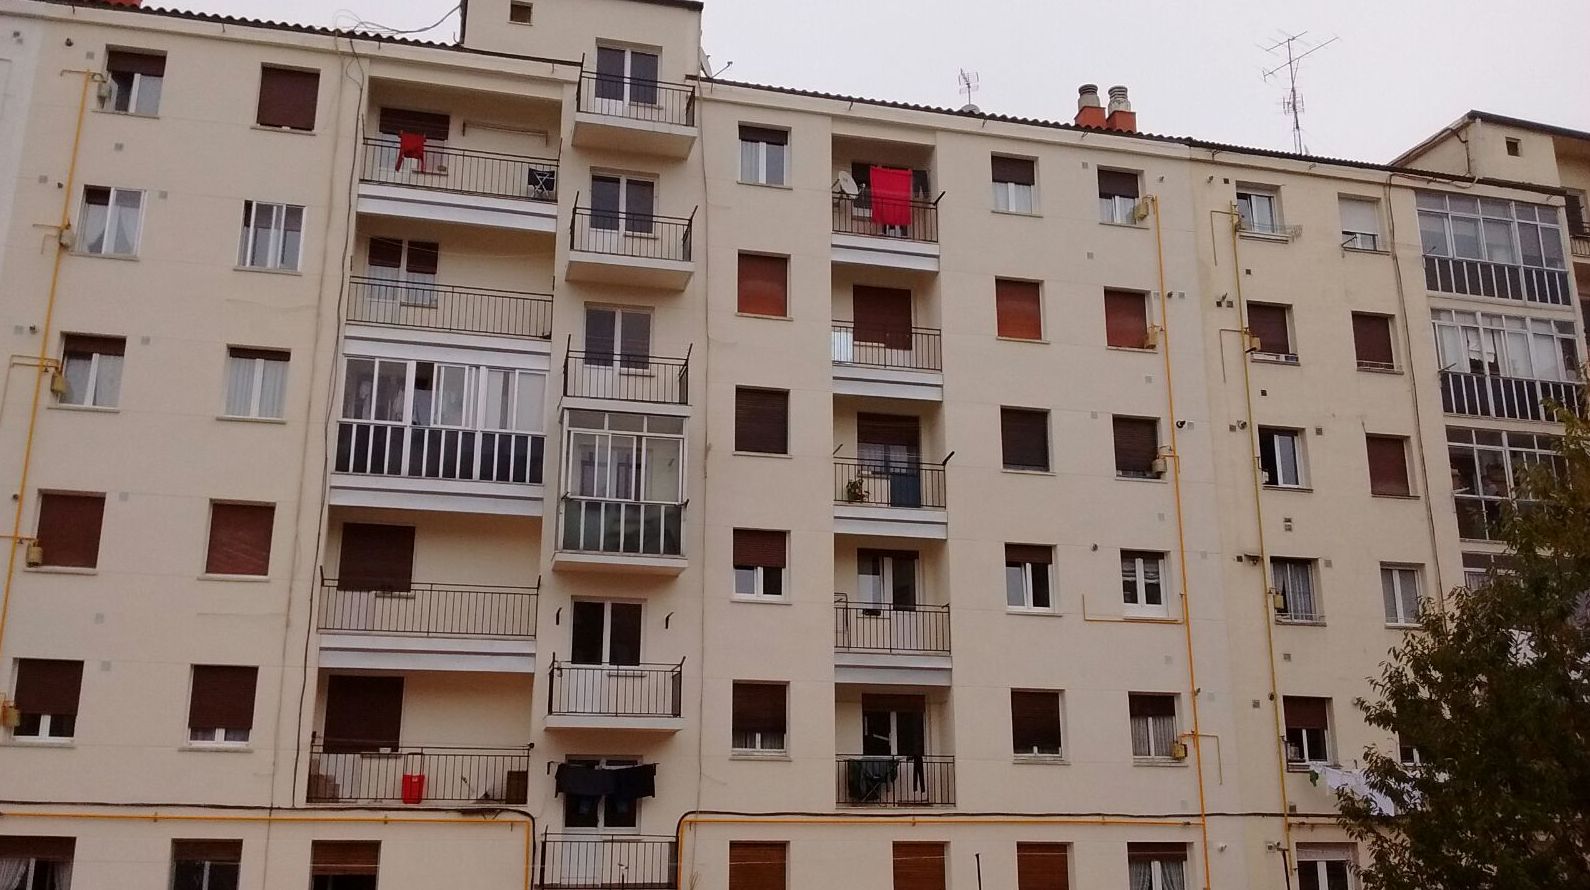 Rehabilitación de fachadas en Vitoria-Gasteiz